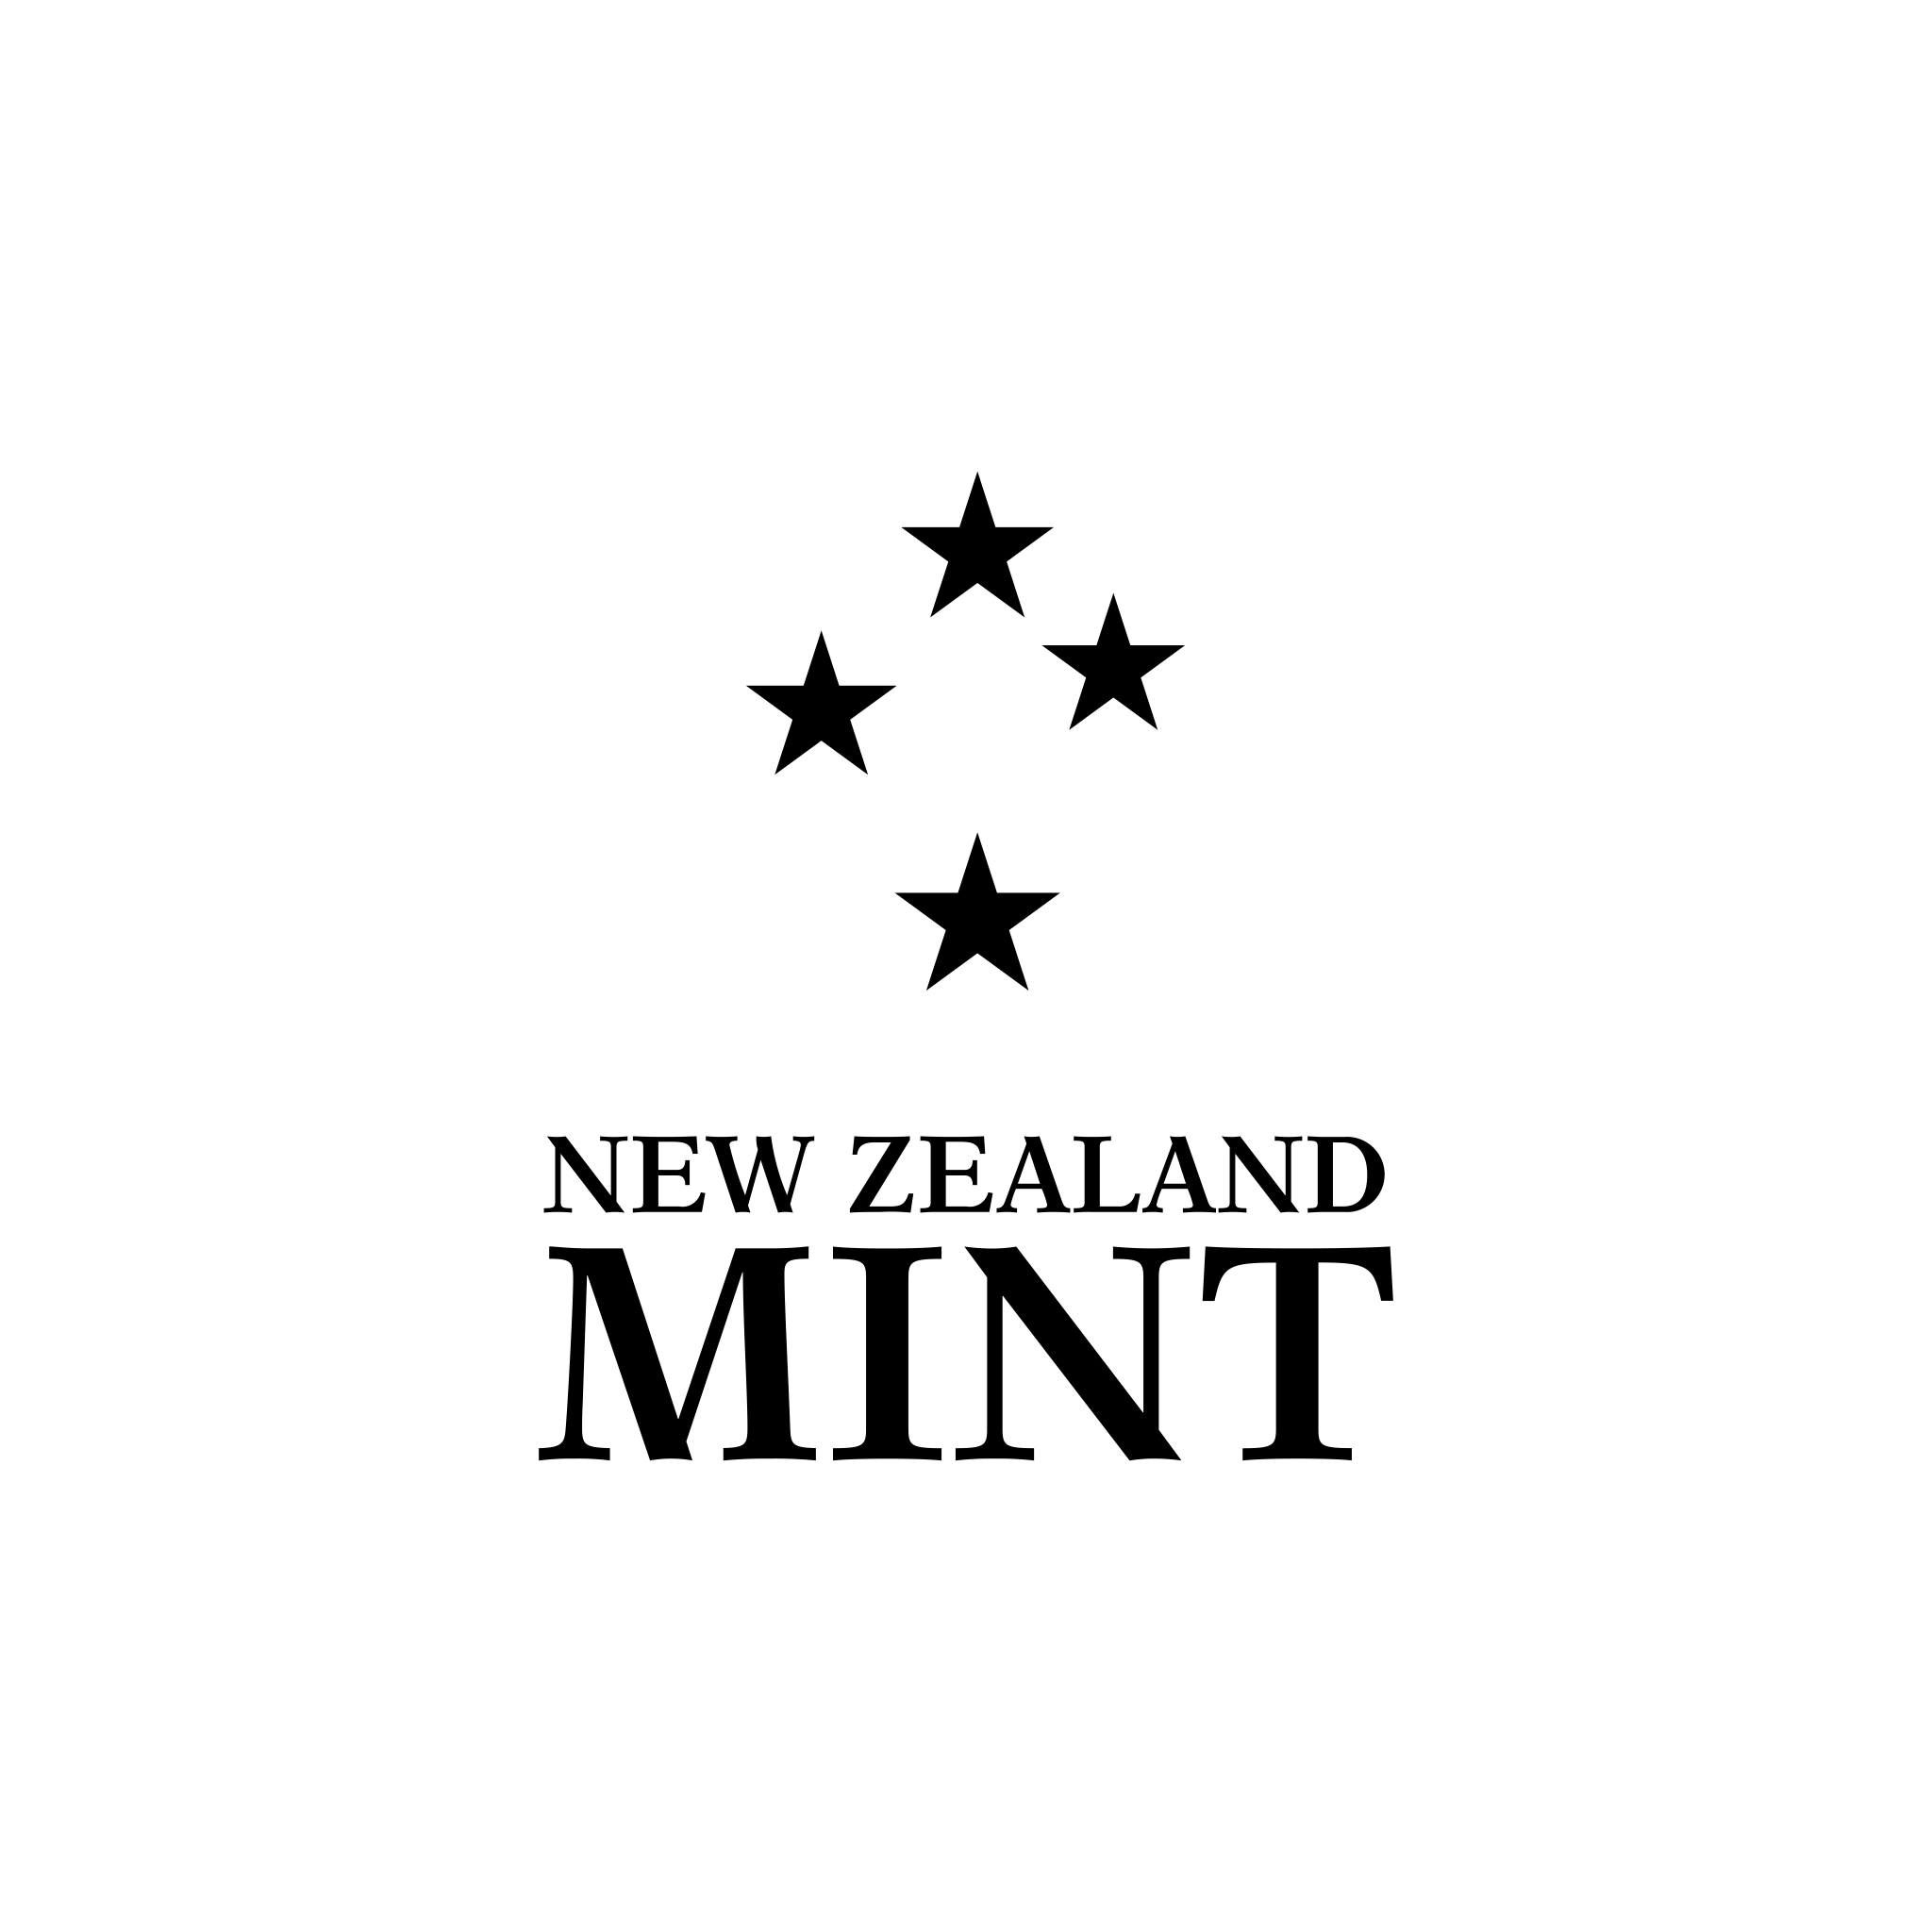 New Zeland Mint